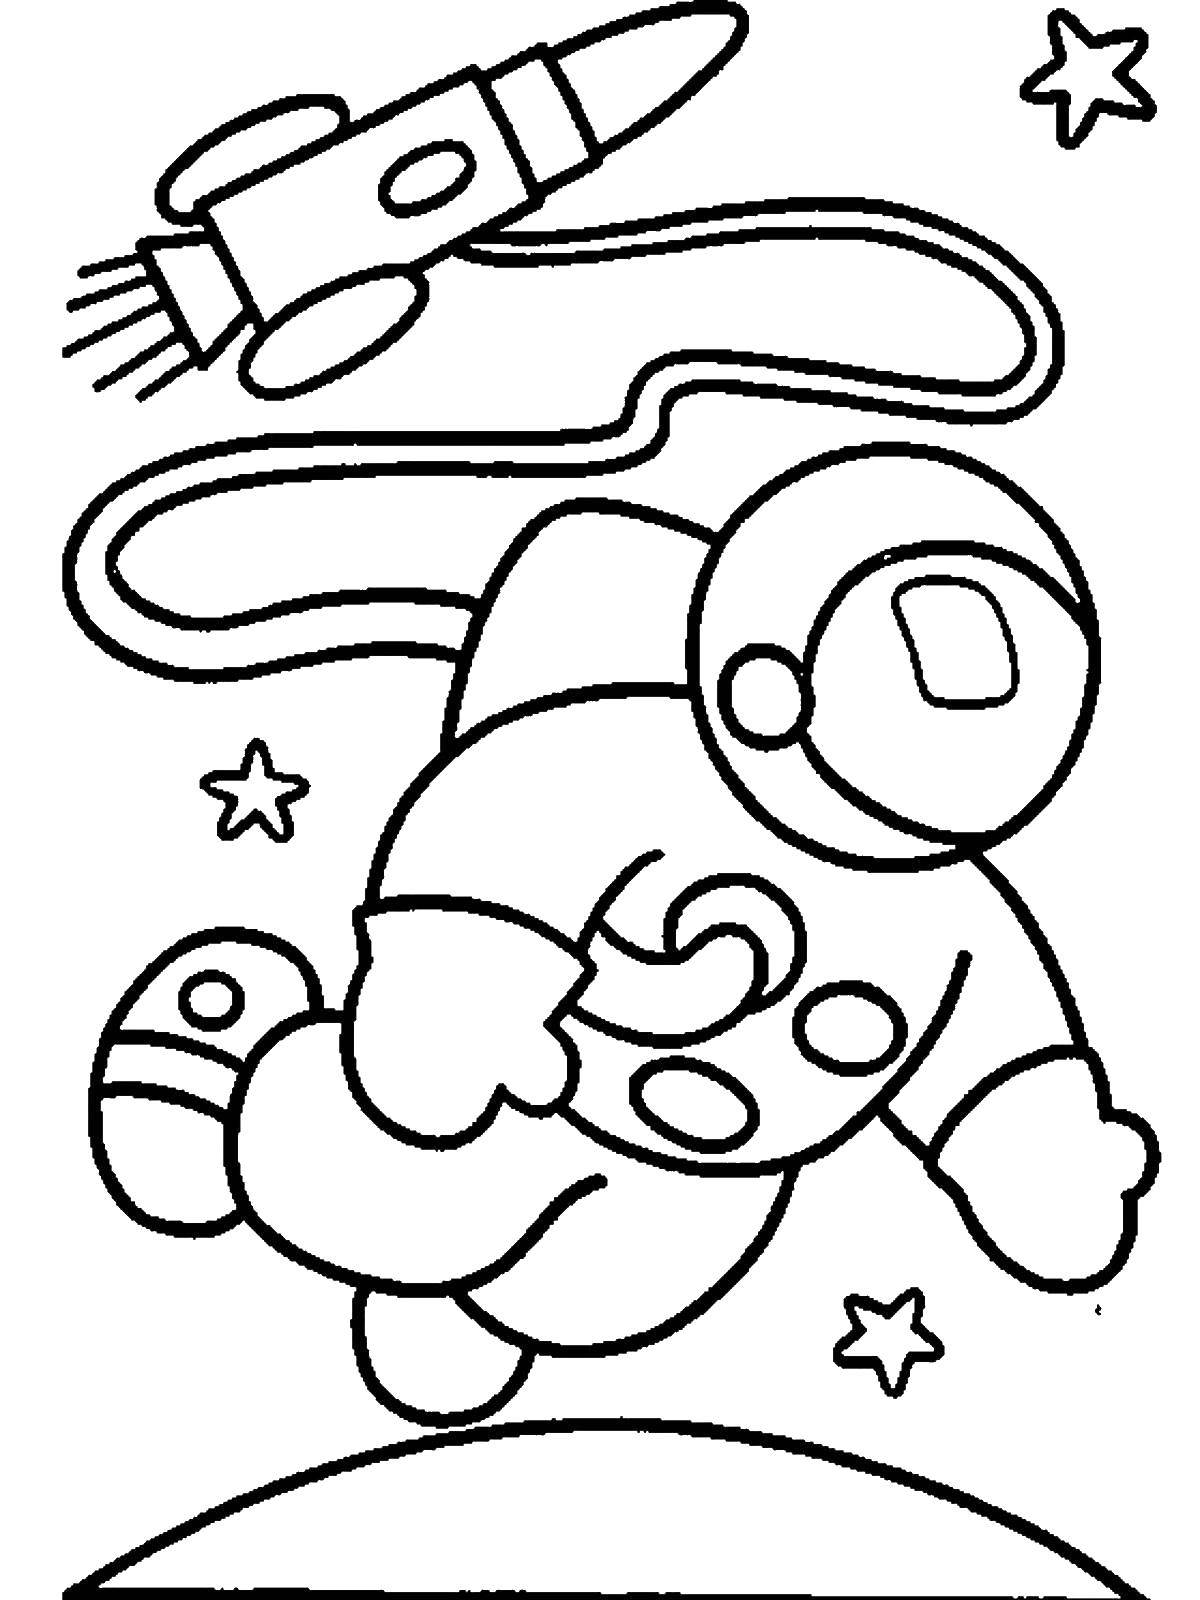 Трафареты ко дню космонавтики. Космос раскраска для детей. Раскраска. В космосе. Космонавт раскраска для детей. Раскраска на тему космос для детей.